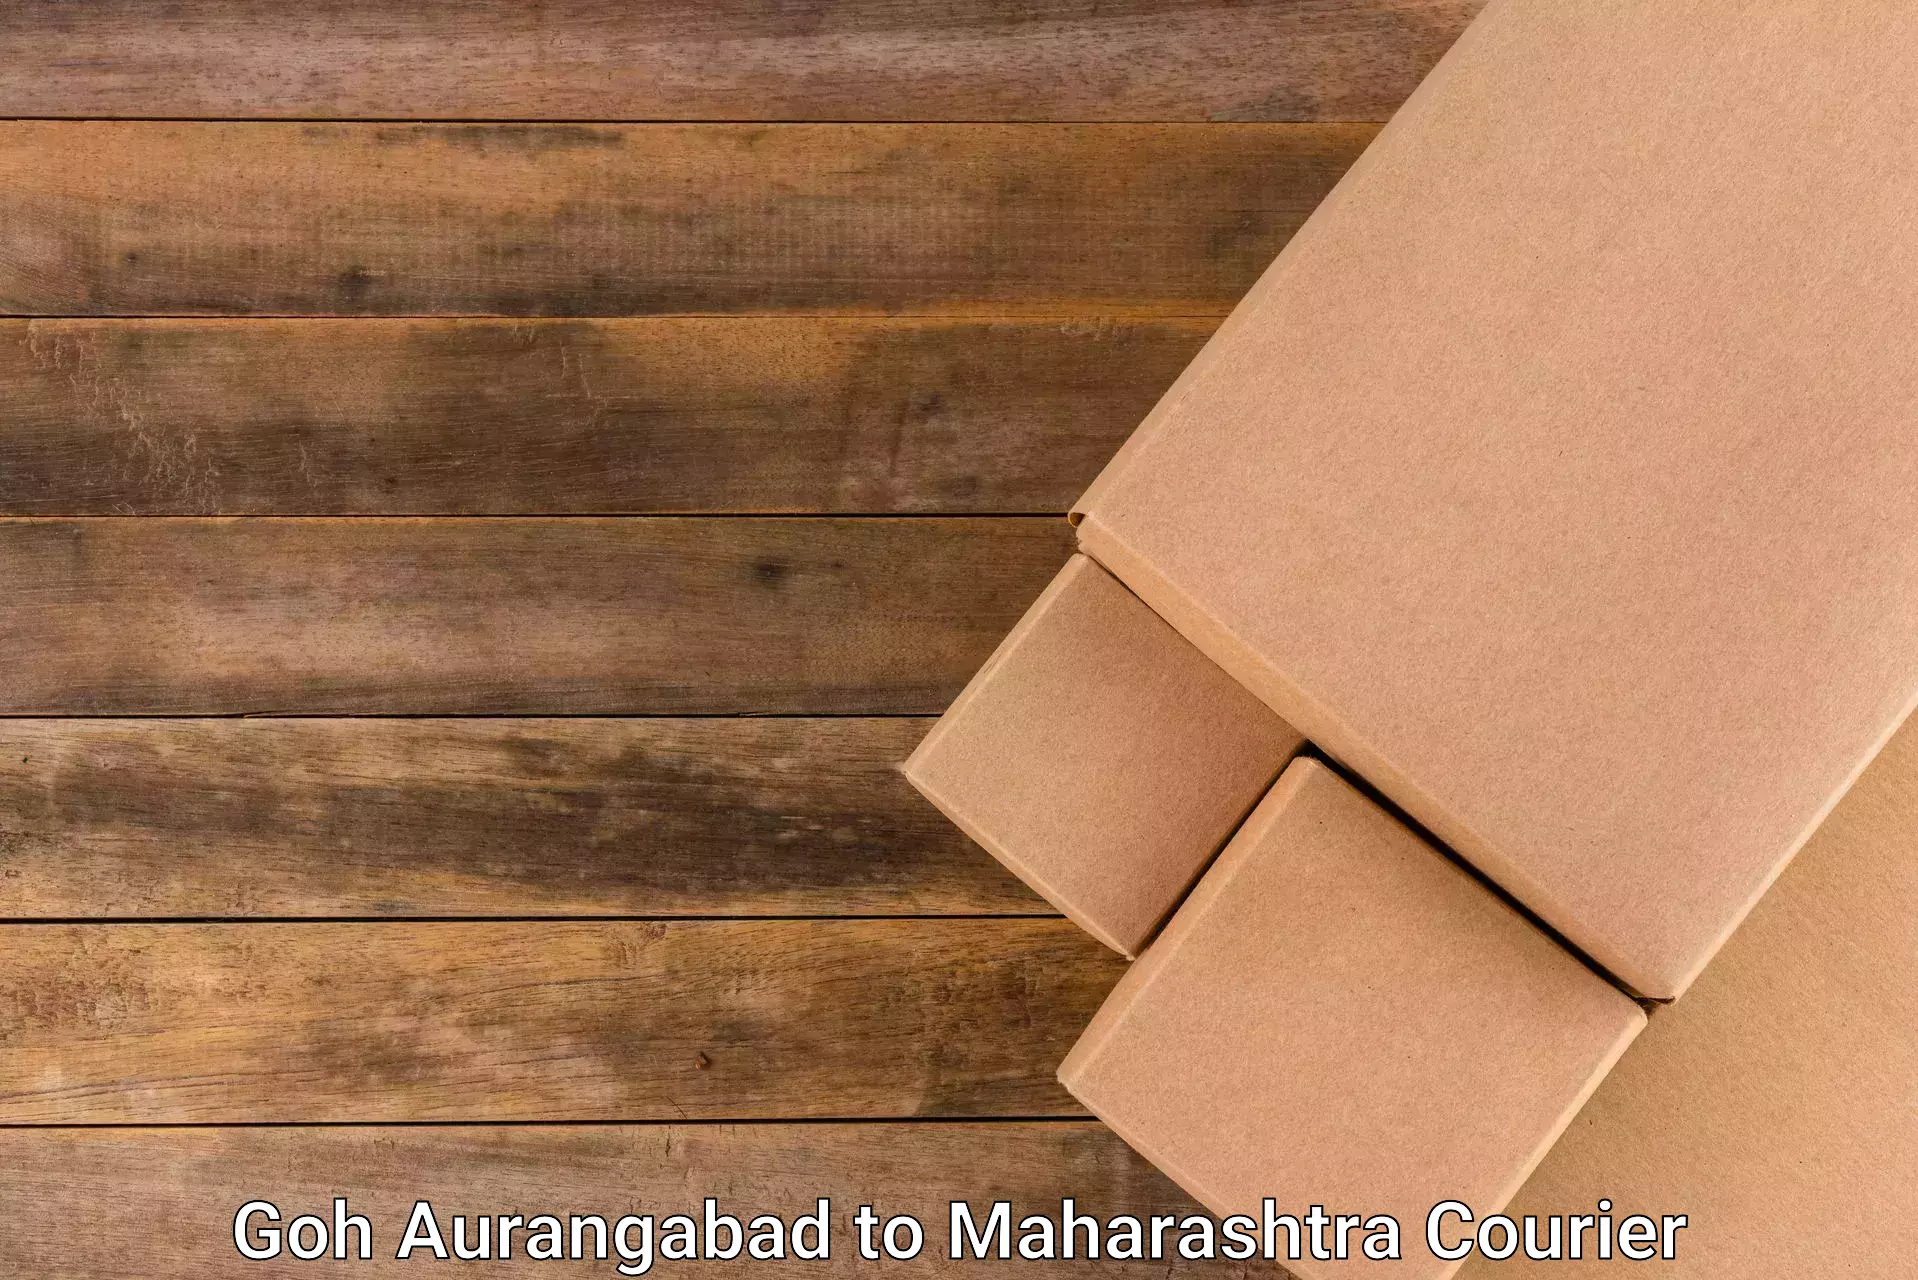 Cost-effective courier solutions Goh Aurangabad to Gangapur Aurangabad